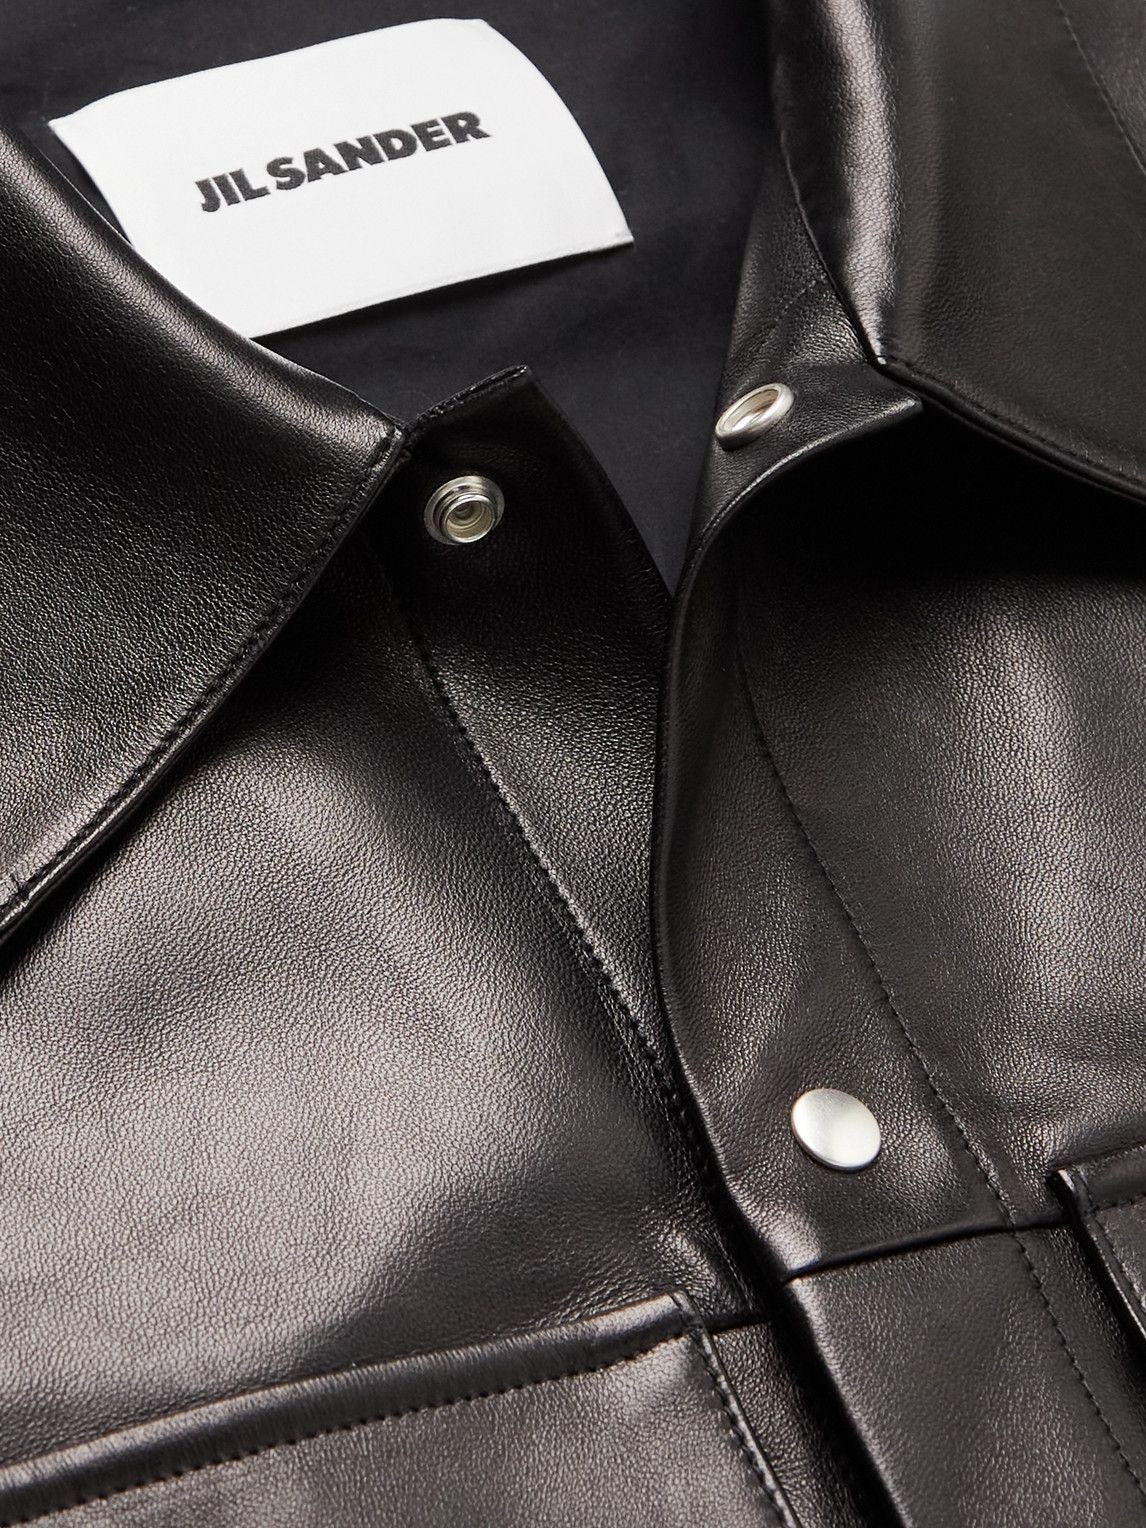 Jil Sander - Leather Shirt Jacket - Black Jil Sander